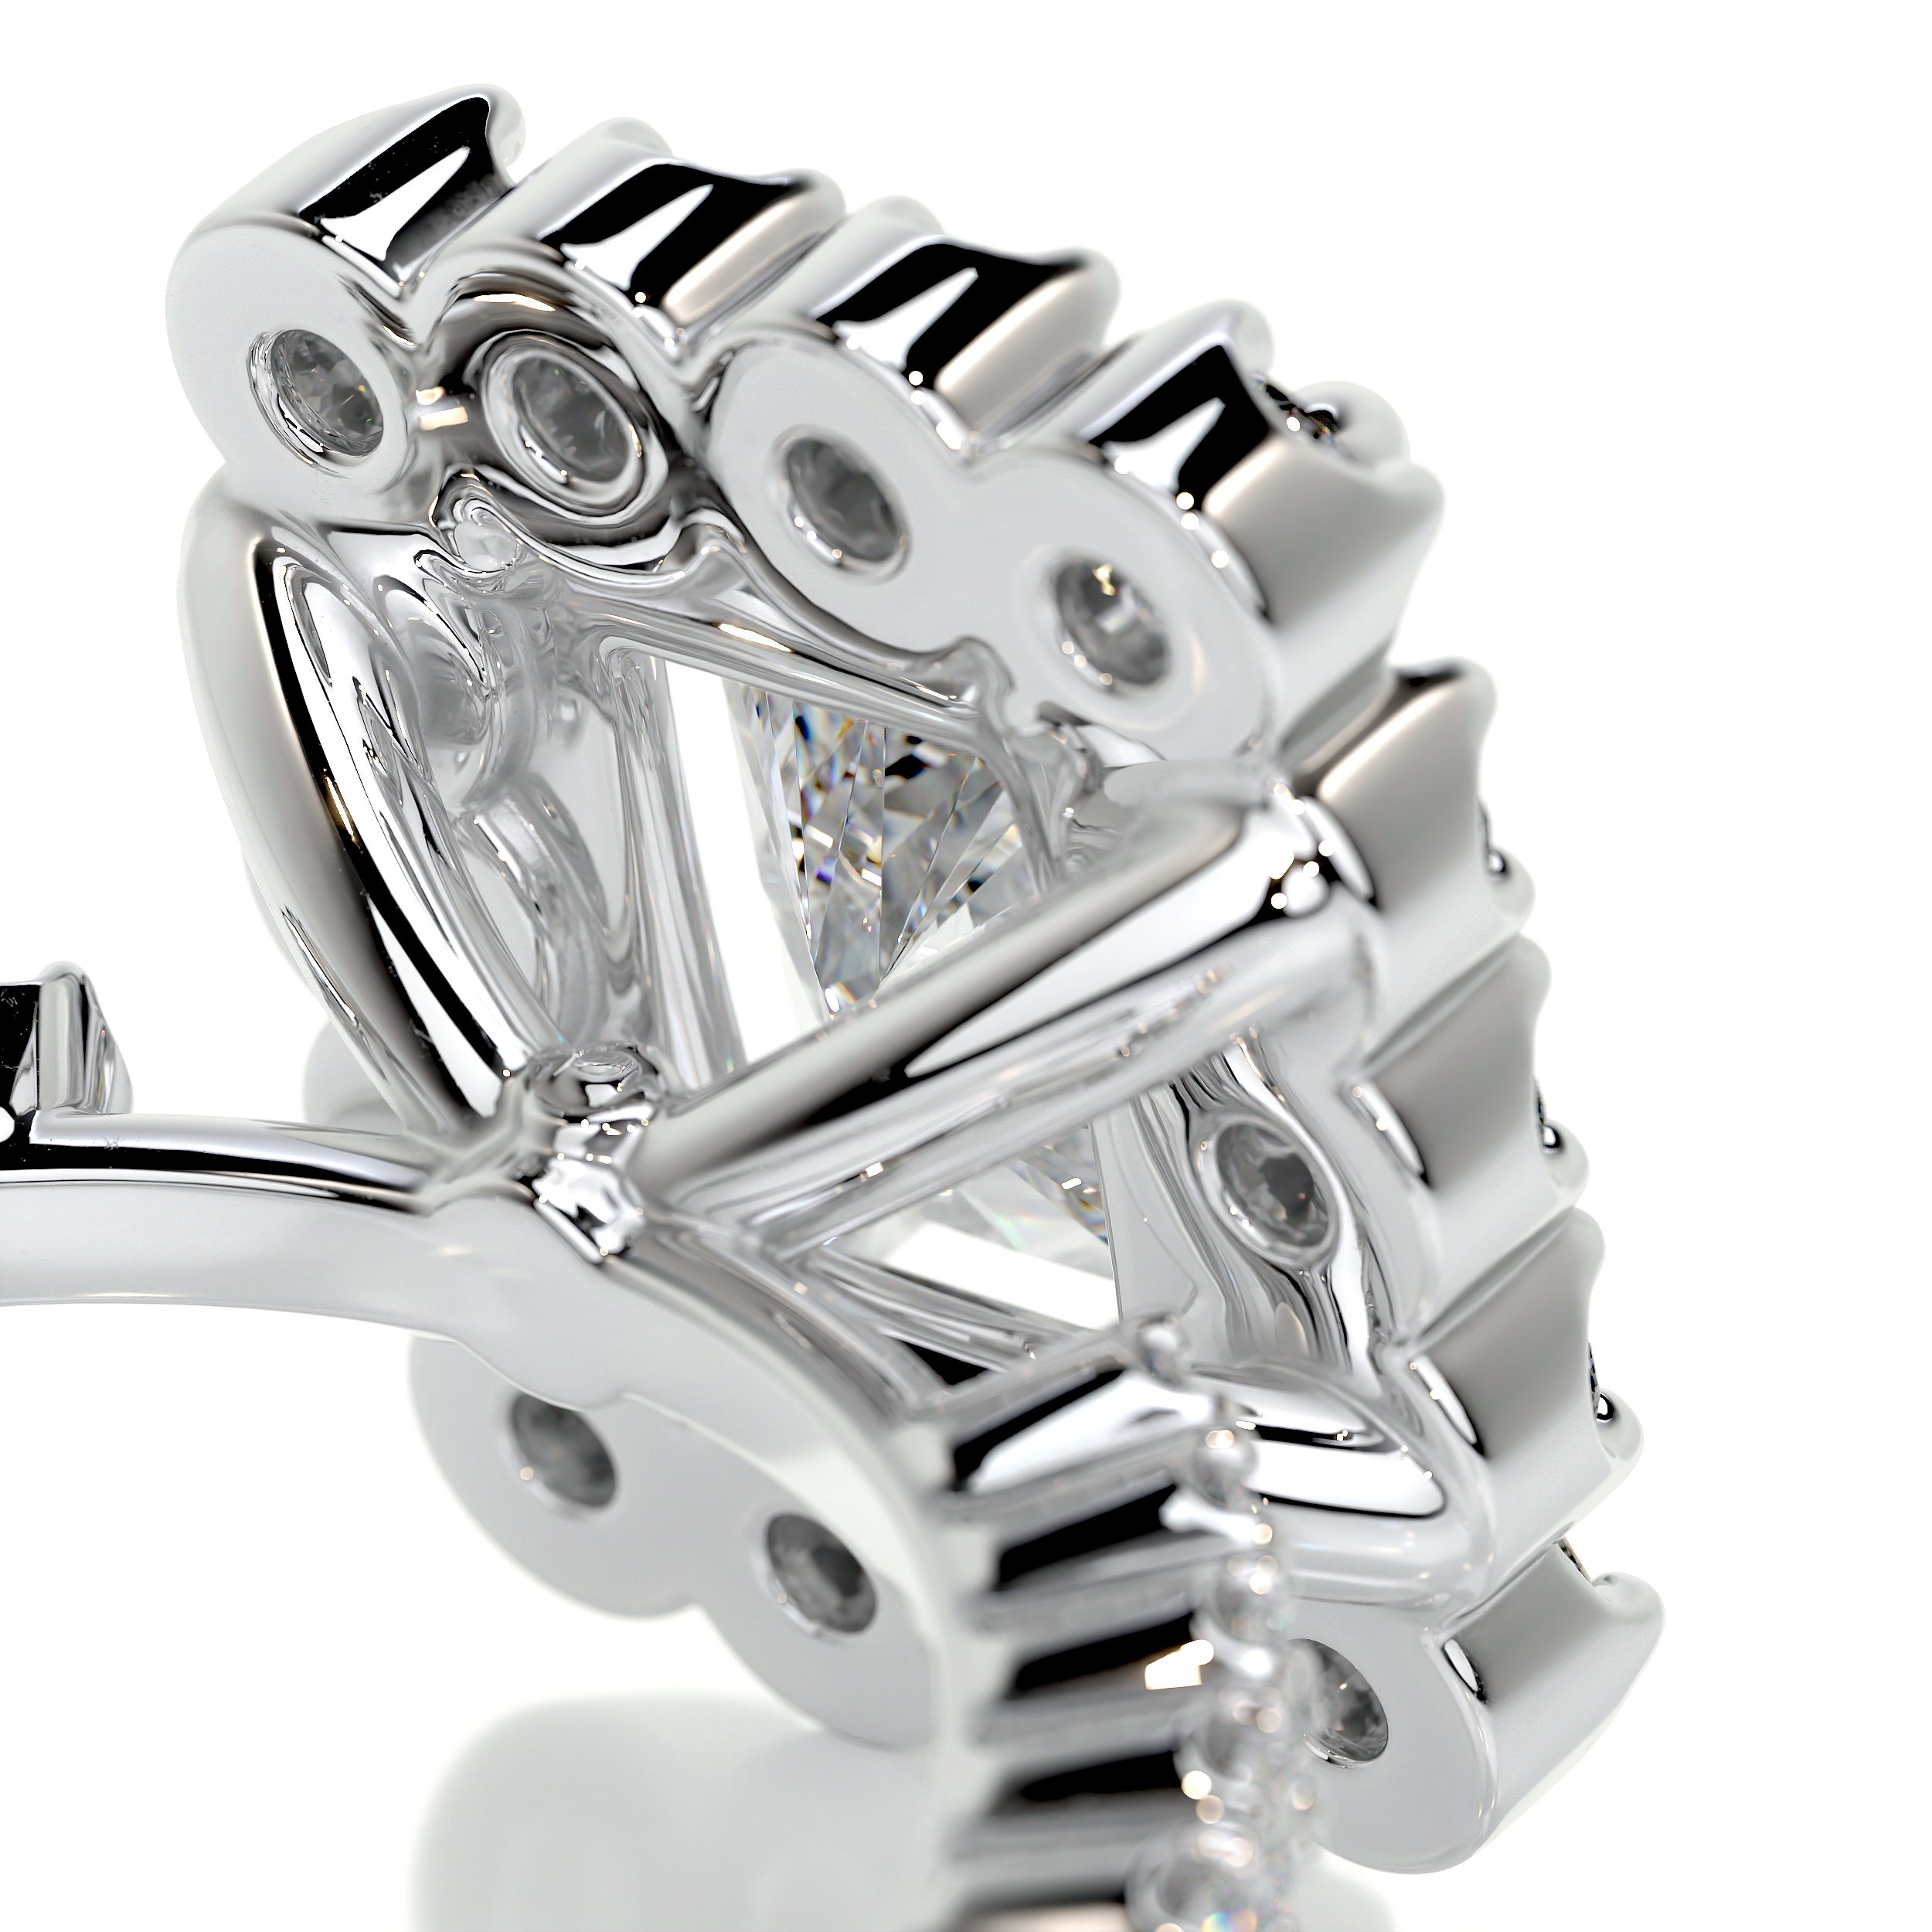 Abby Moissanite & Diamonds Ring -18K White Gold